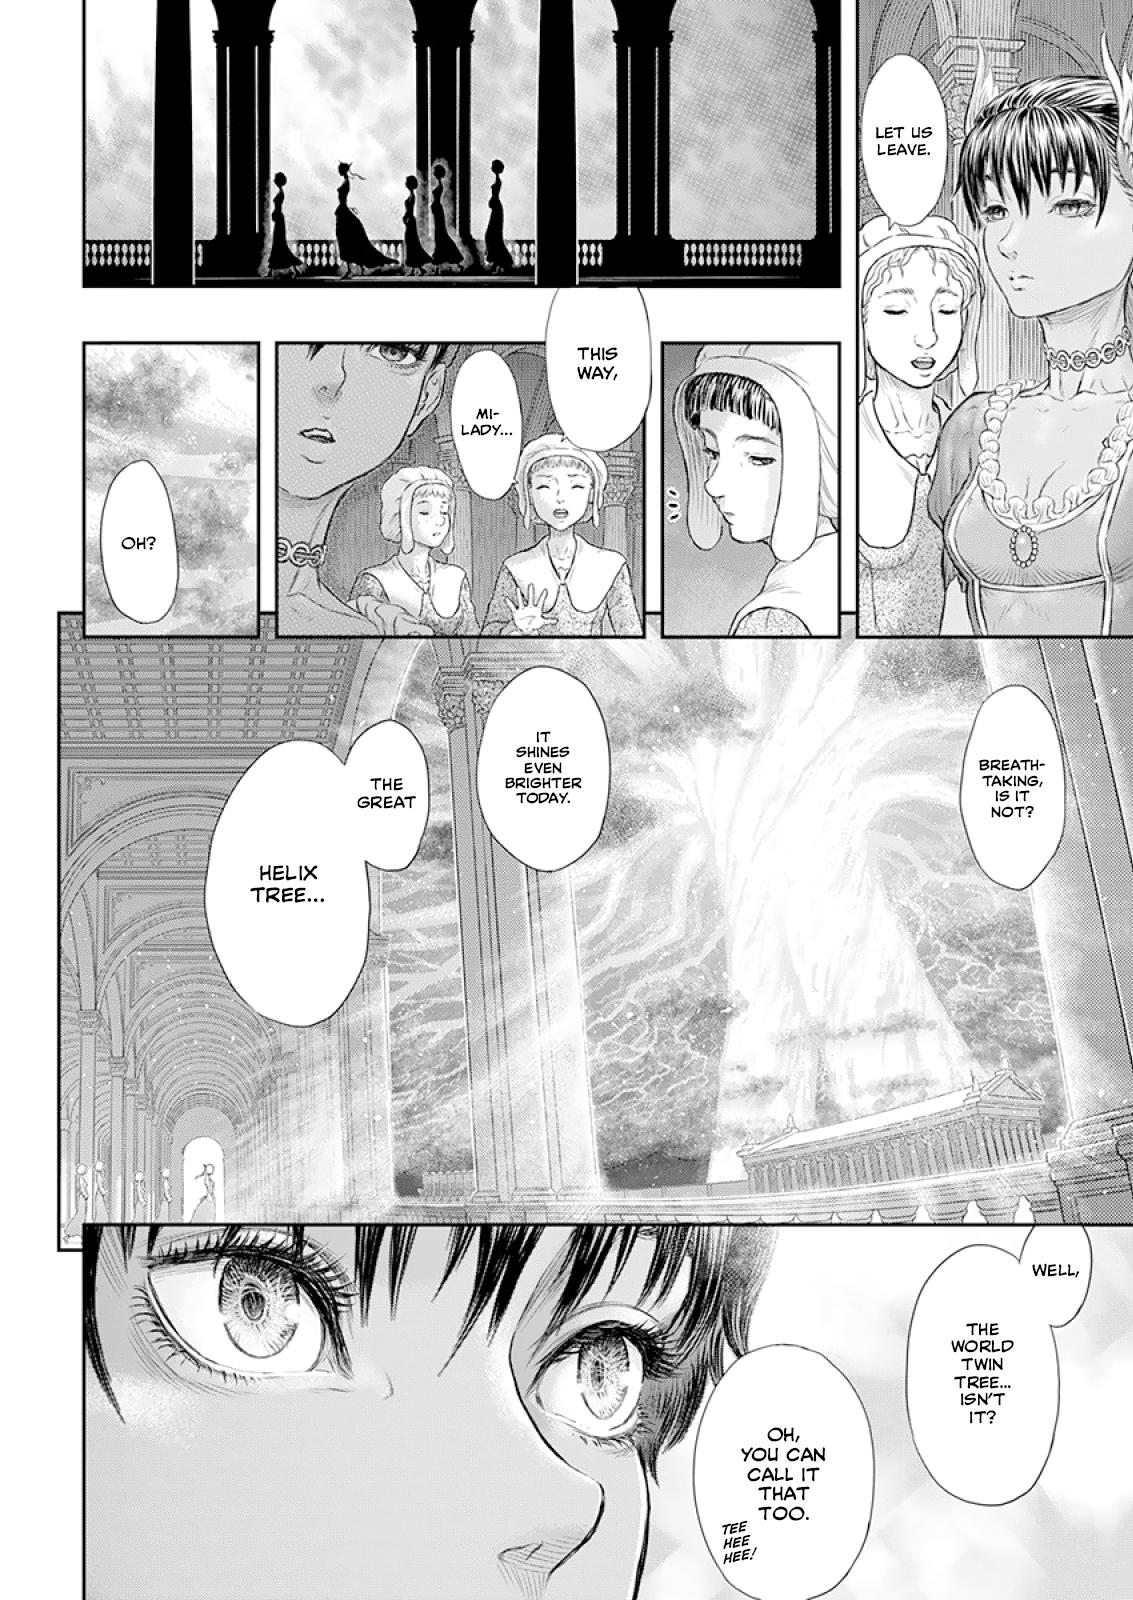 Berserk Manga Chapter 372 image 07